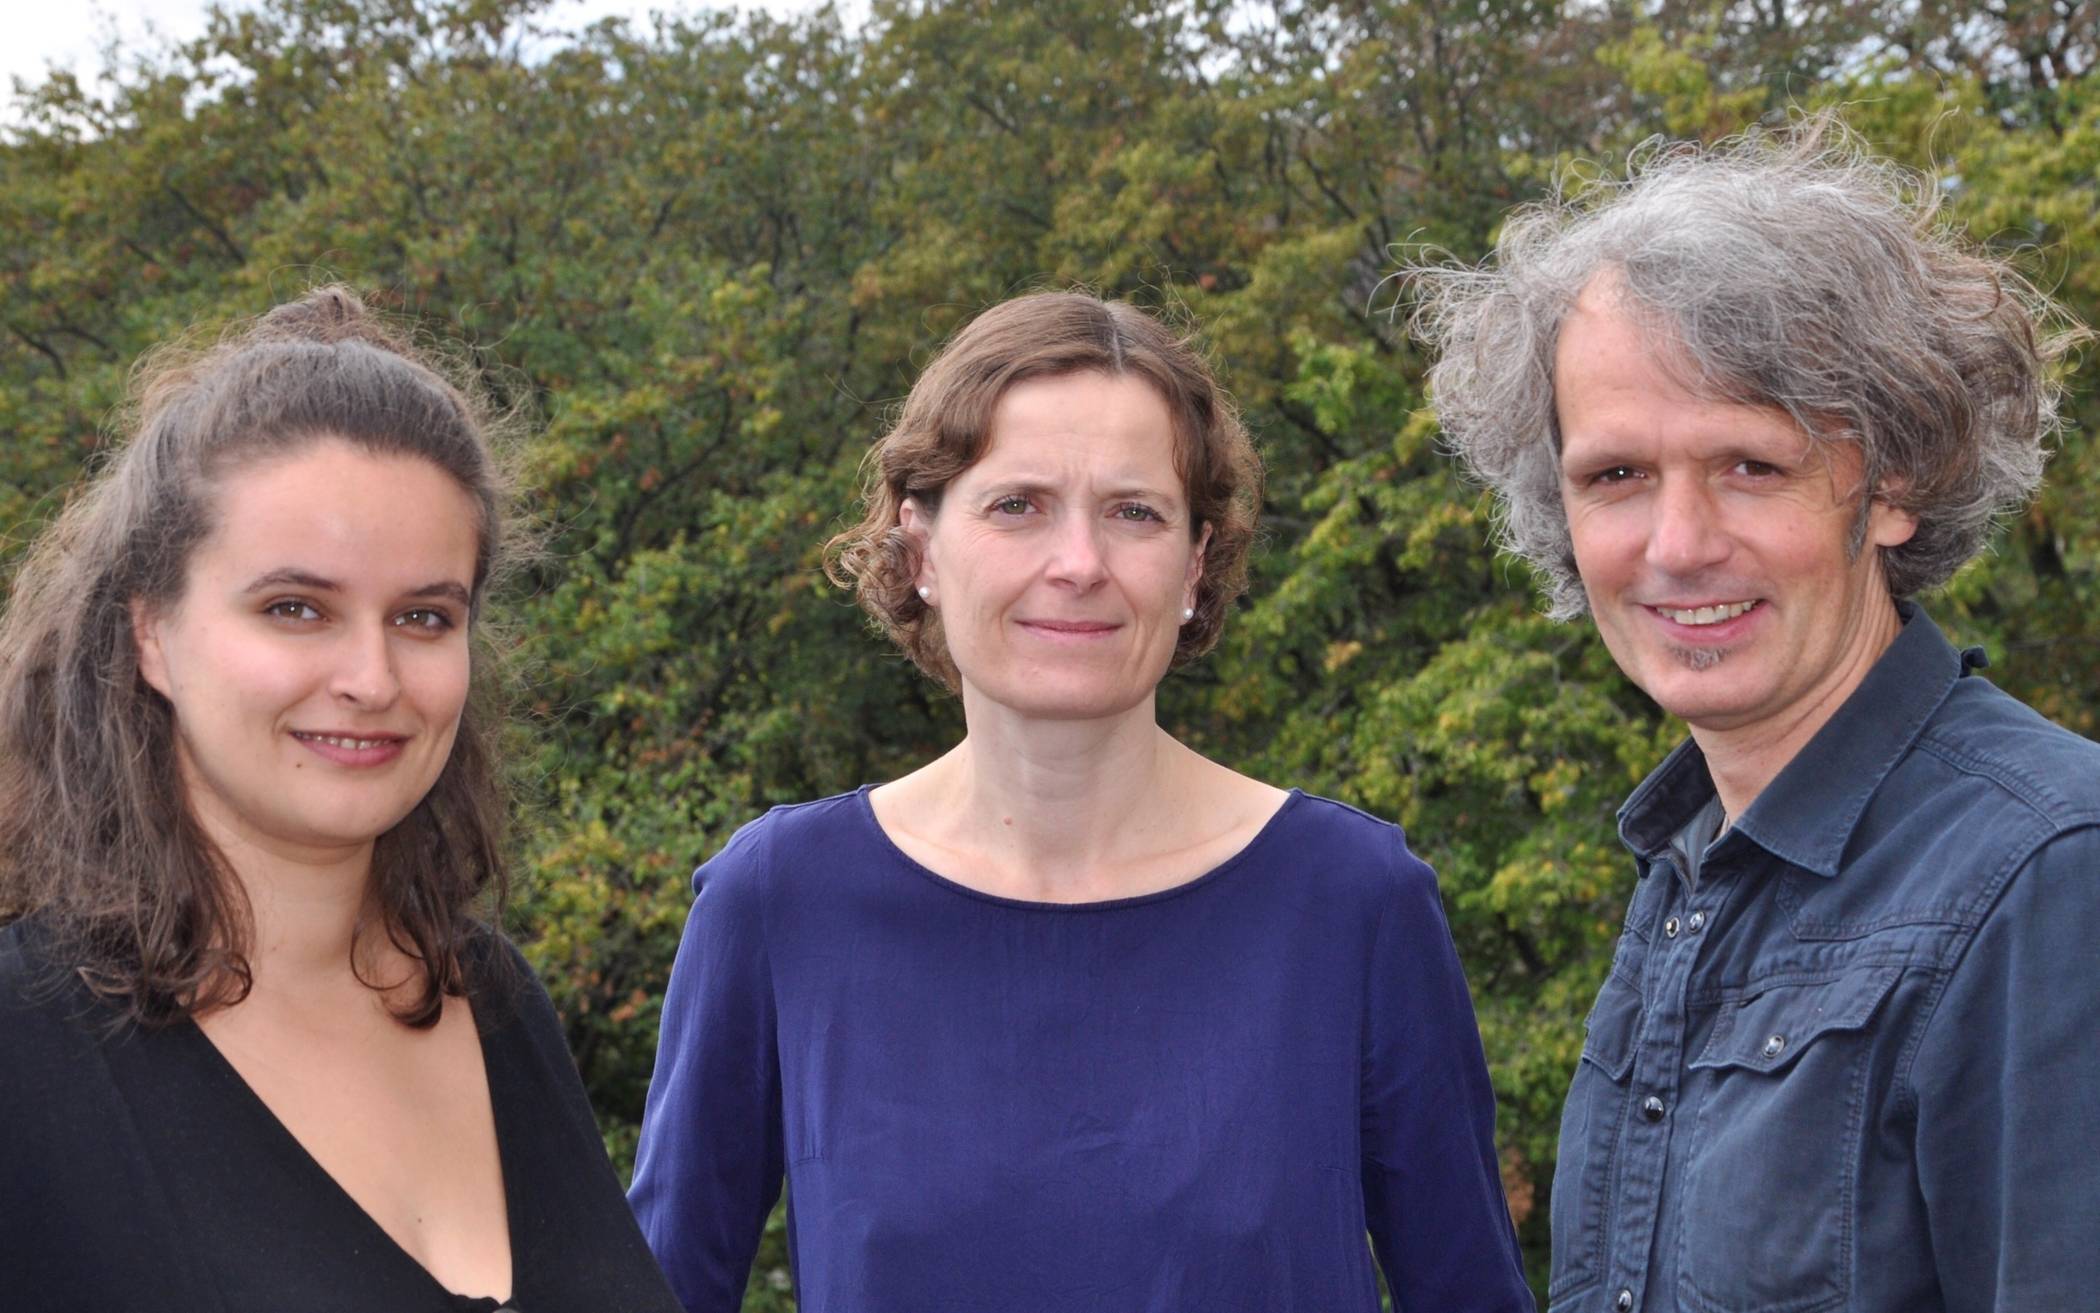  Lea Isabelle Sander, Annette Ziegenmeyer (Mitte) und Björn Krüger haben praxisorientiertes Handbuch für alle geschrieben, die Kulturprojekte entwickeln und erfolgreich realisieren wollen.  